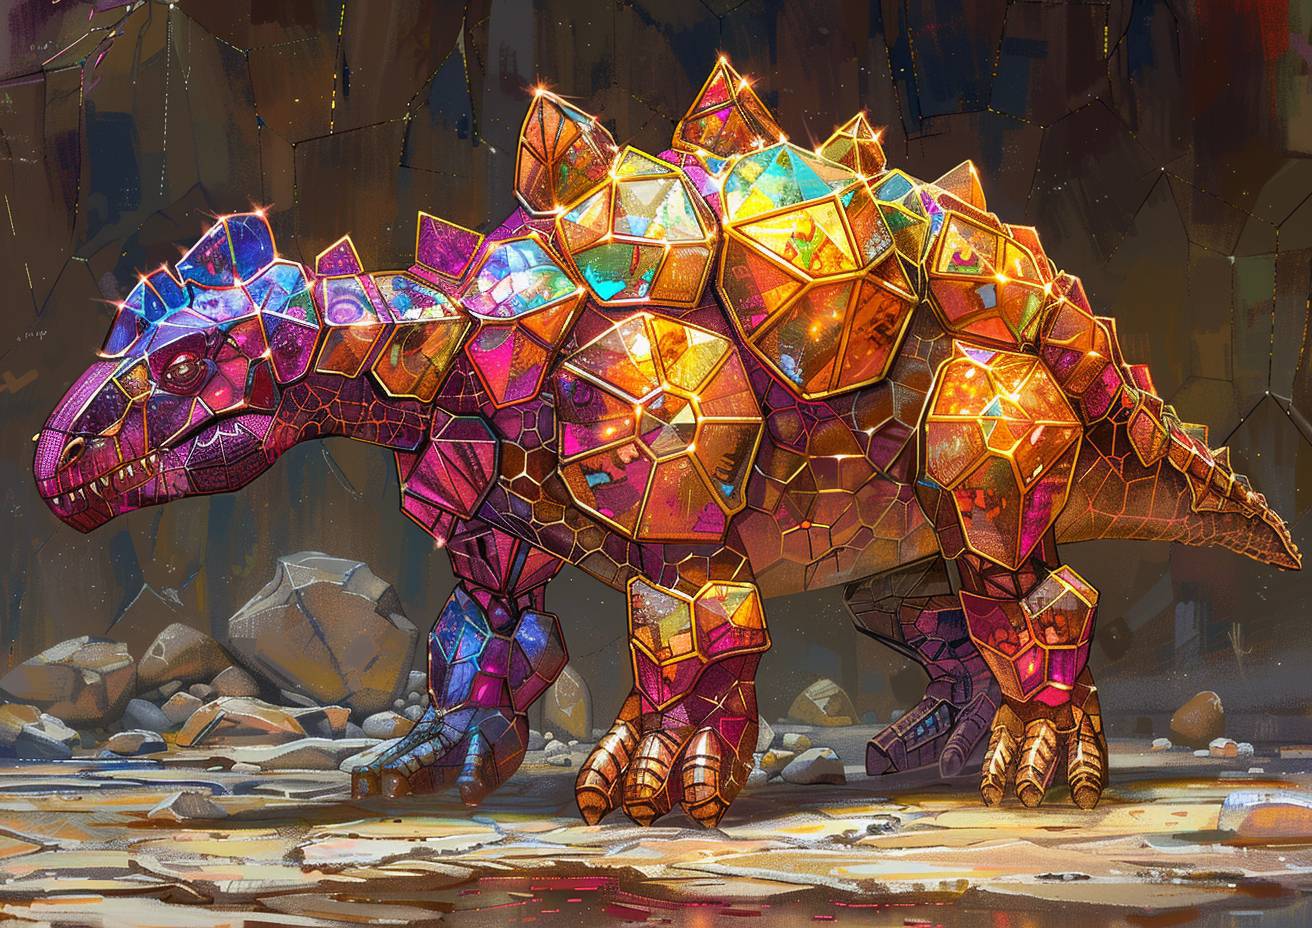 宝石箱恐竜の幻想的なフリーハンドスケッチ、光の屈折、コントラスト、輝かしい色彩、強い視覚的流れ